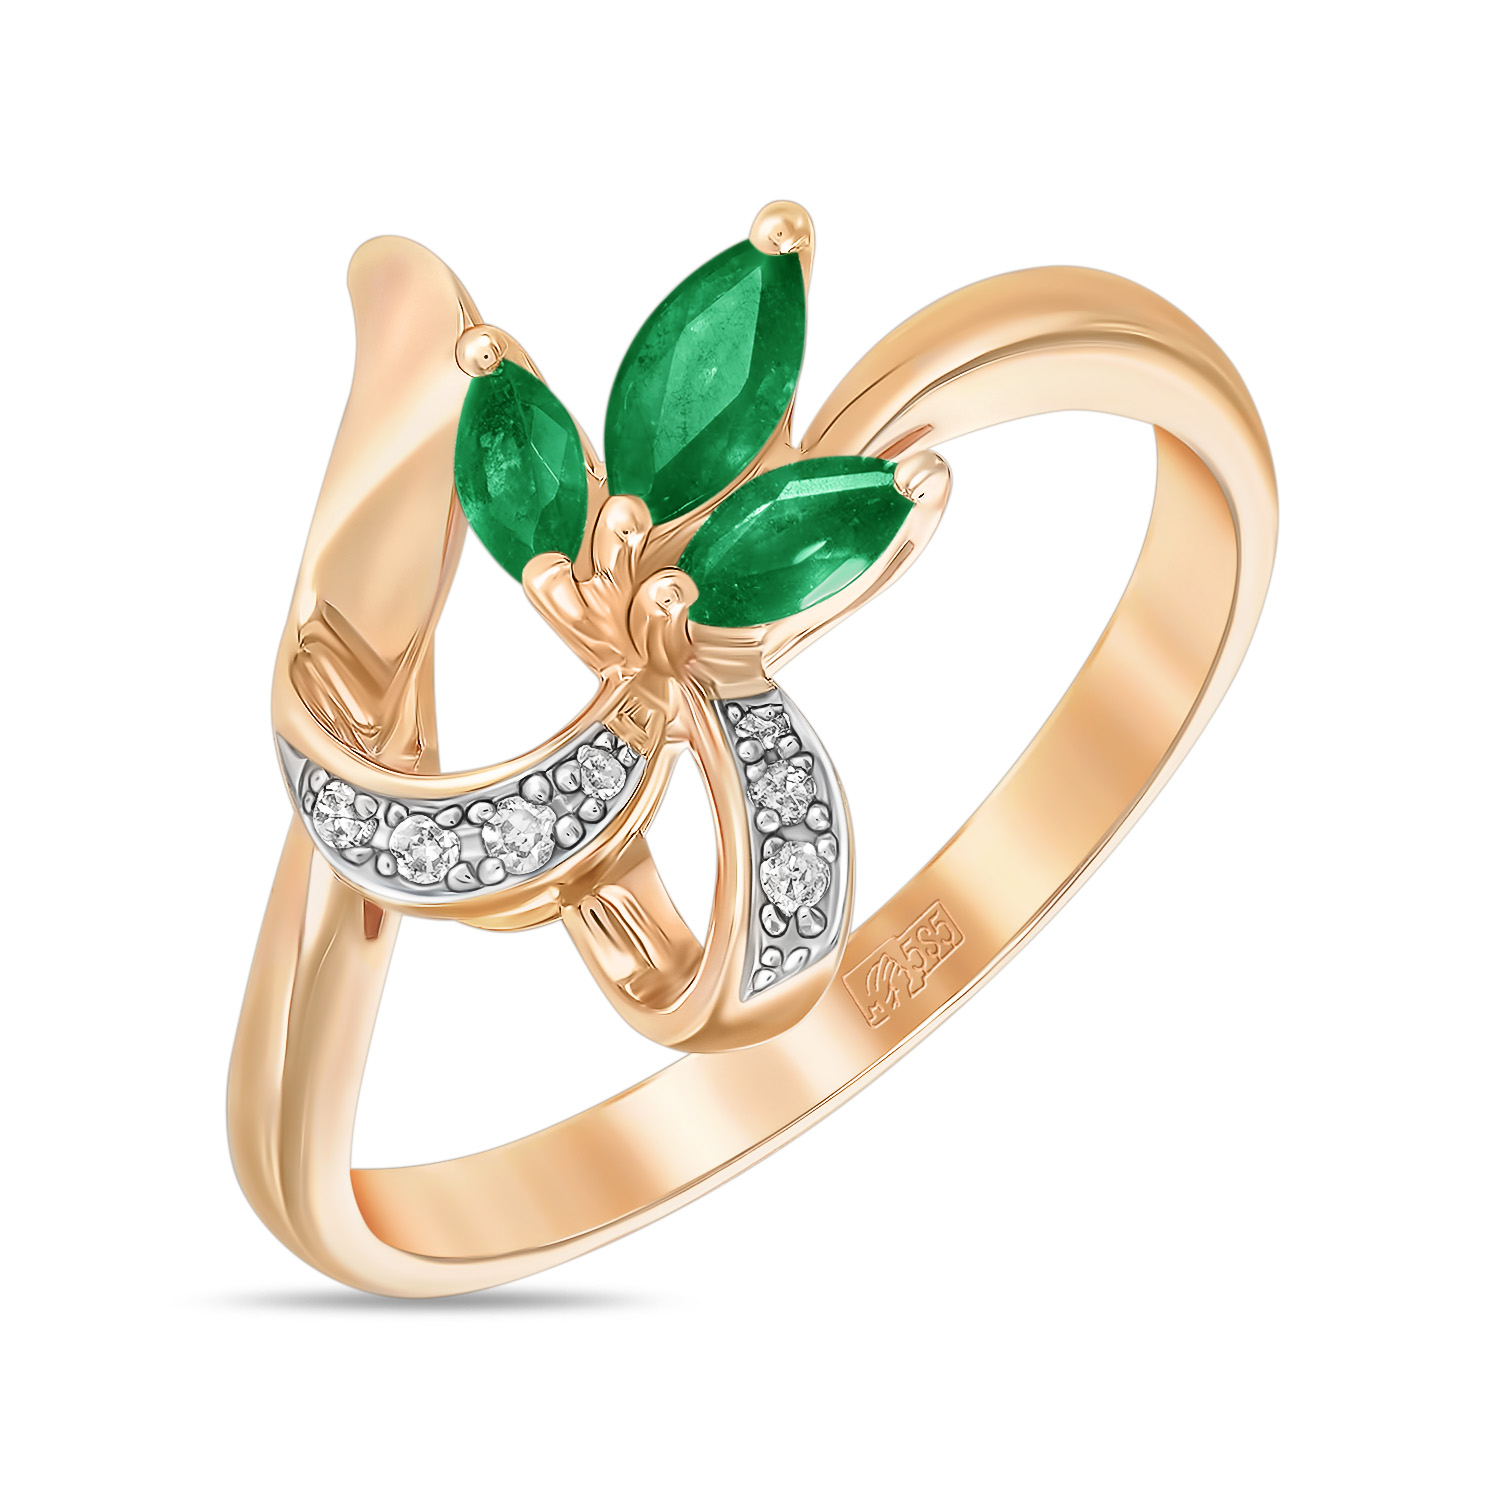 Кольца МЮЗ Золотое кольцо с бриллиантами и изумрудами кольца мюз золотое кольцо с бриллиантами и изумрудами